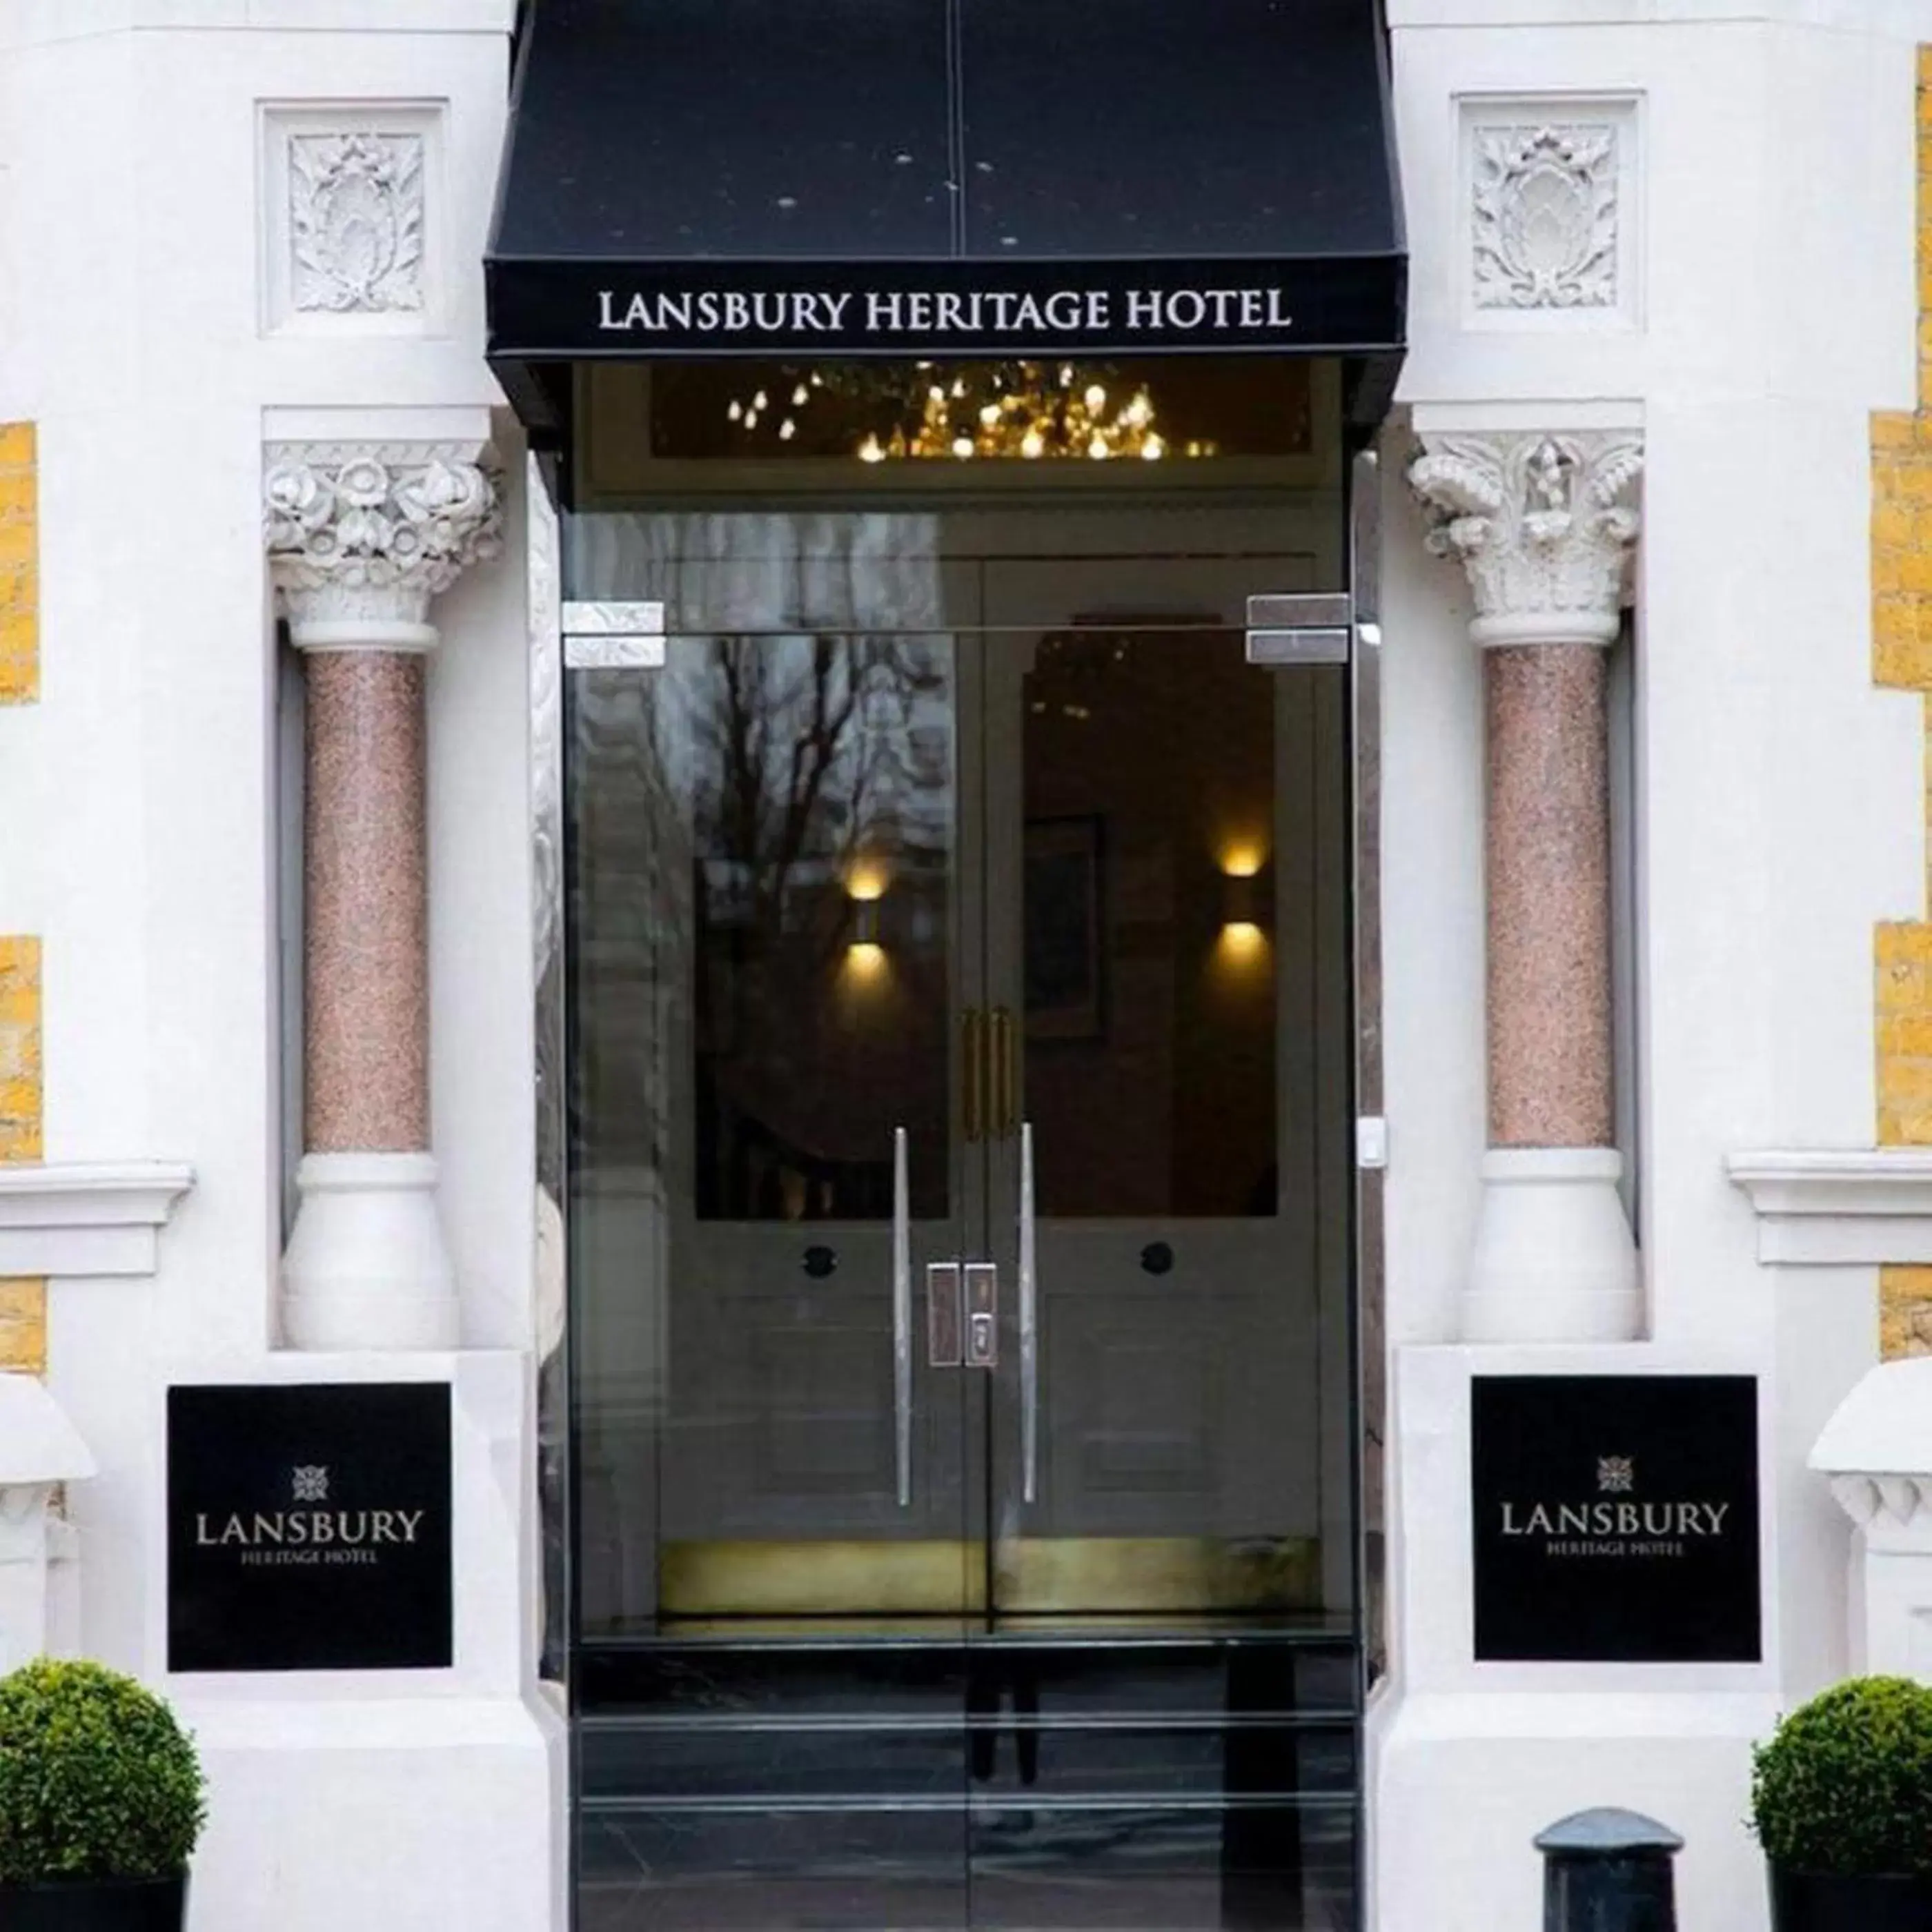 Facade/Entrance in Lansbury Heritage Hotel